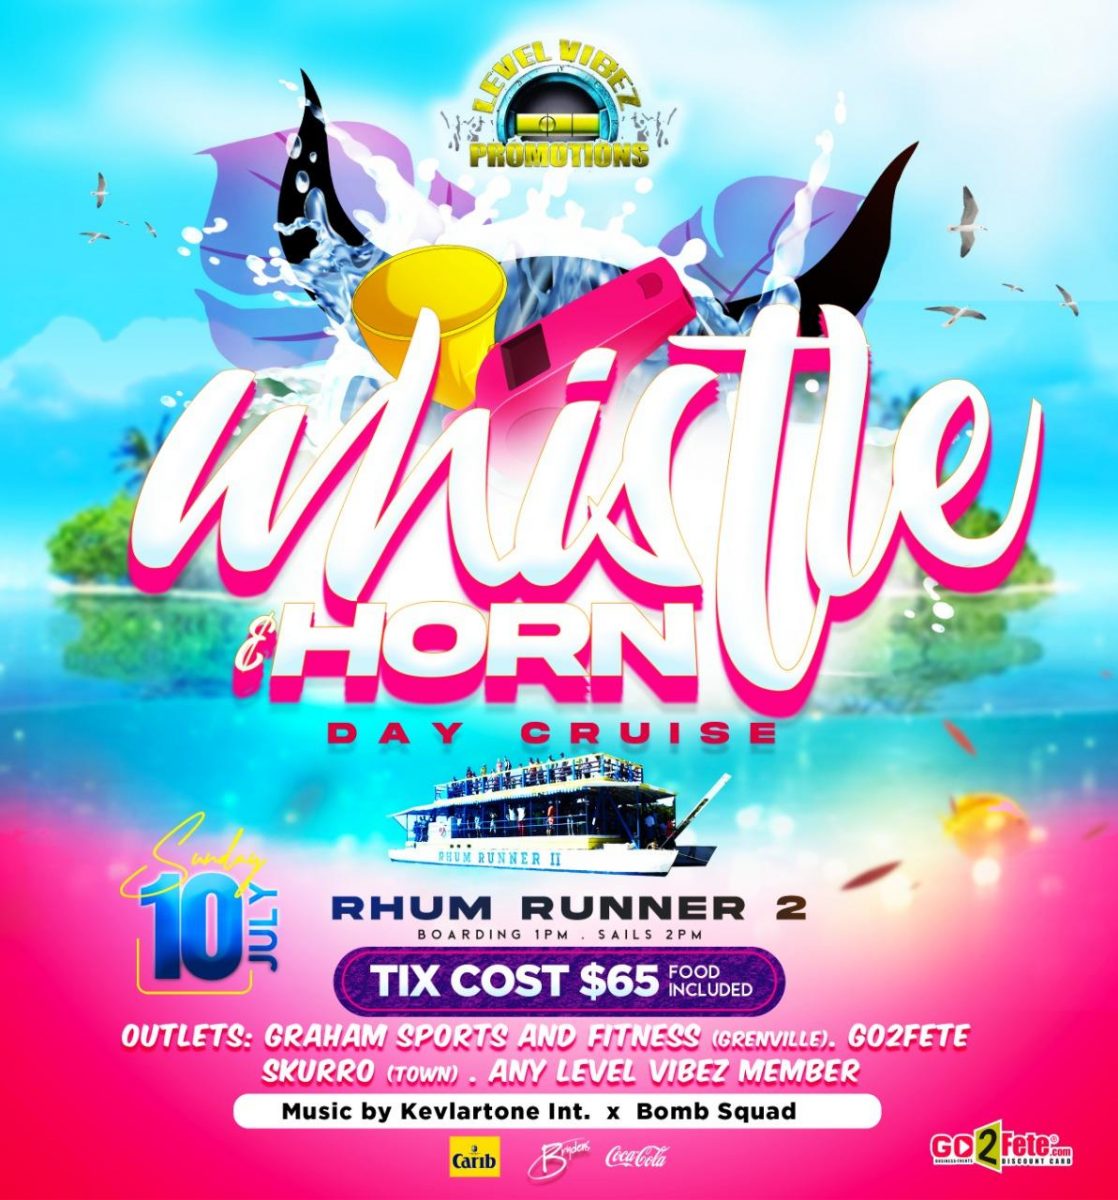 Whistle and Horn Day Cruise - Rhum Runner 2